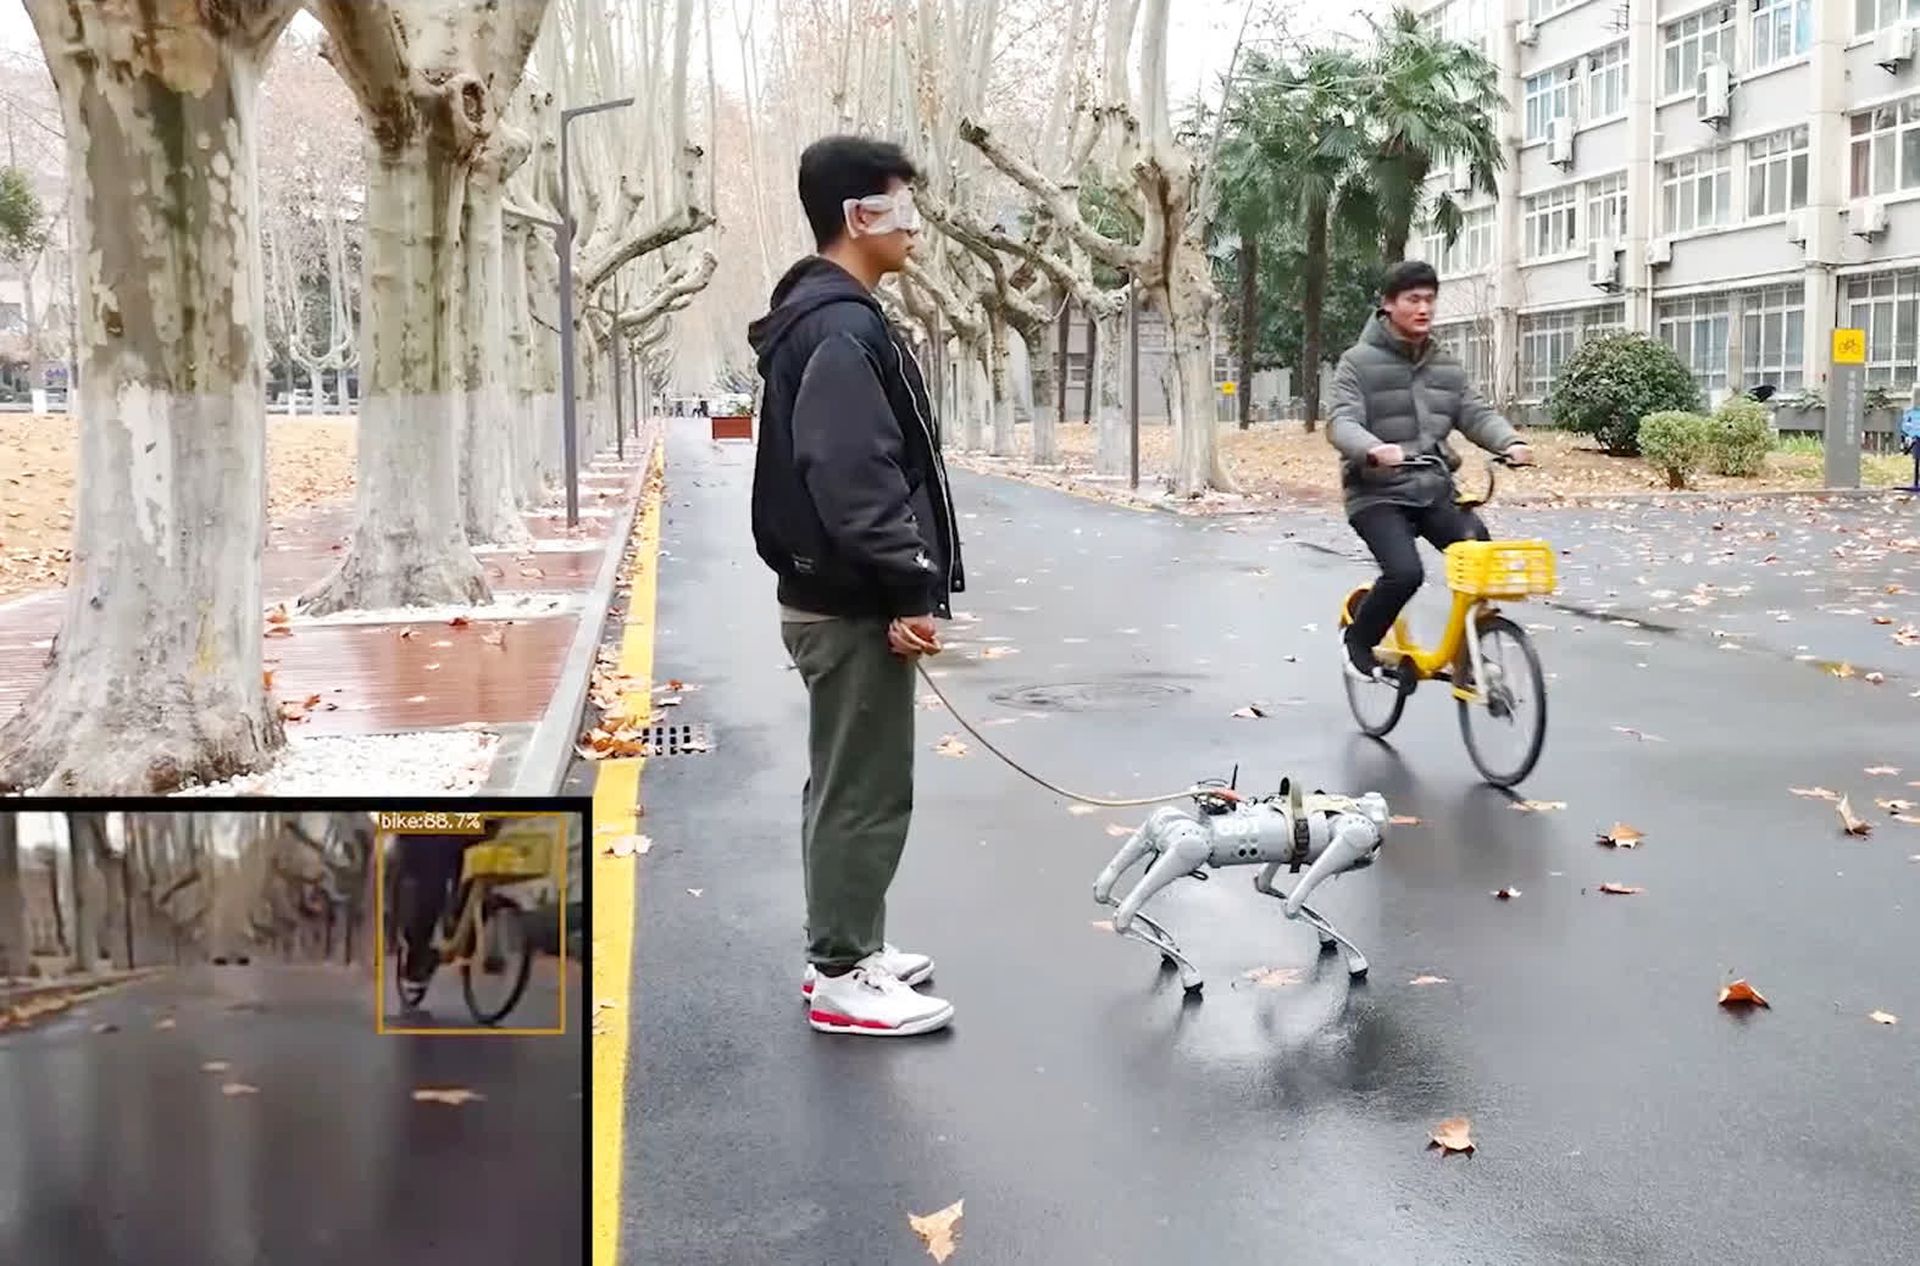 Les robots pourraient bientôt envahir les rues de manière mignonne